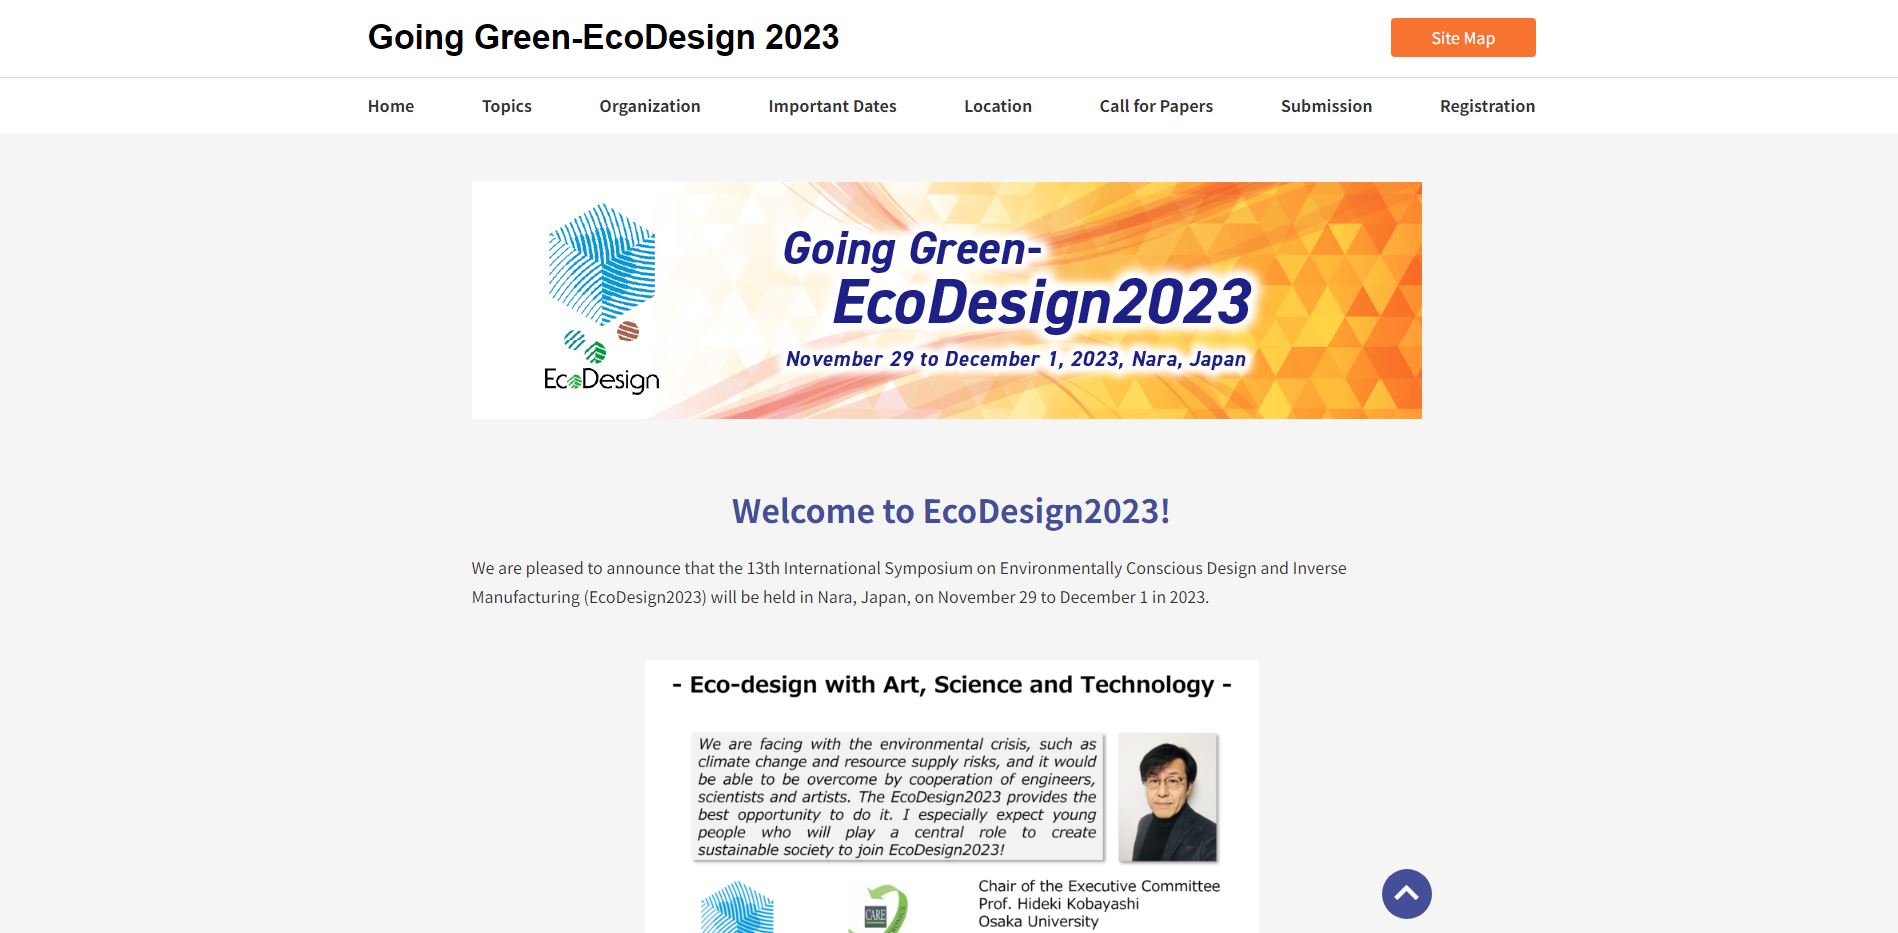 Going Green-EcoDesign 2023